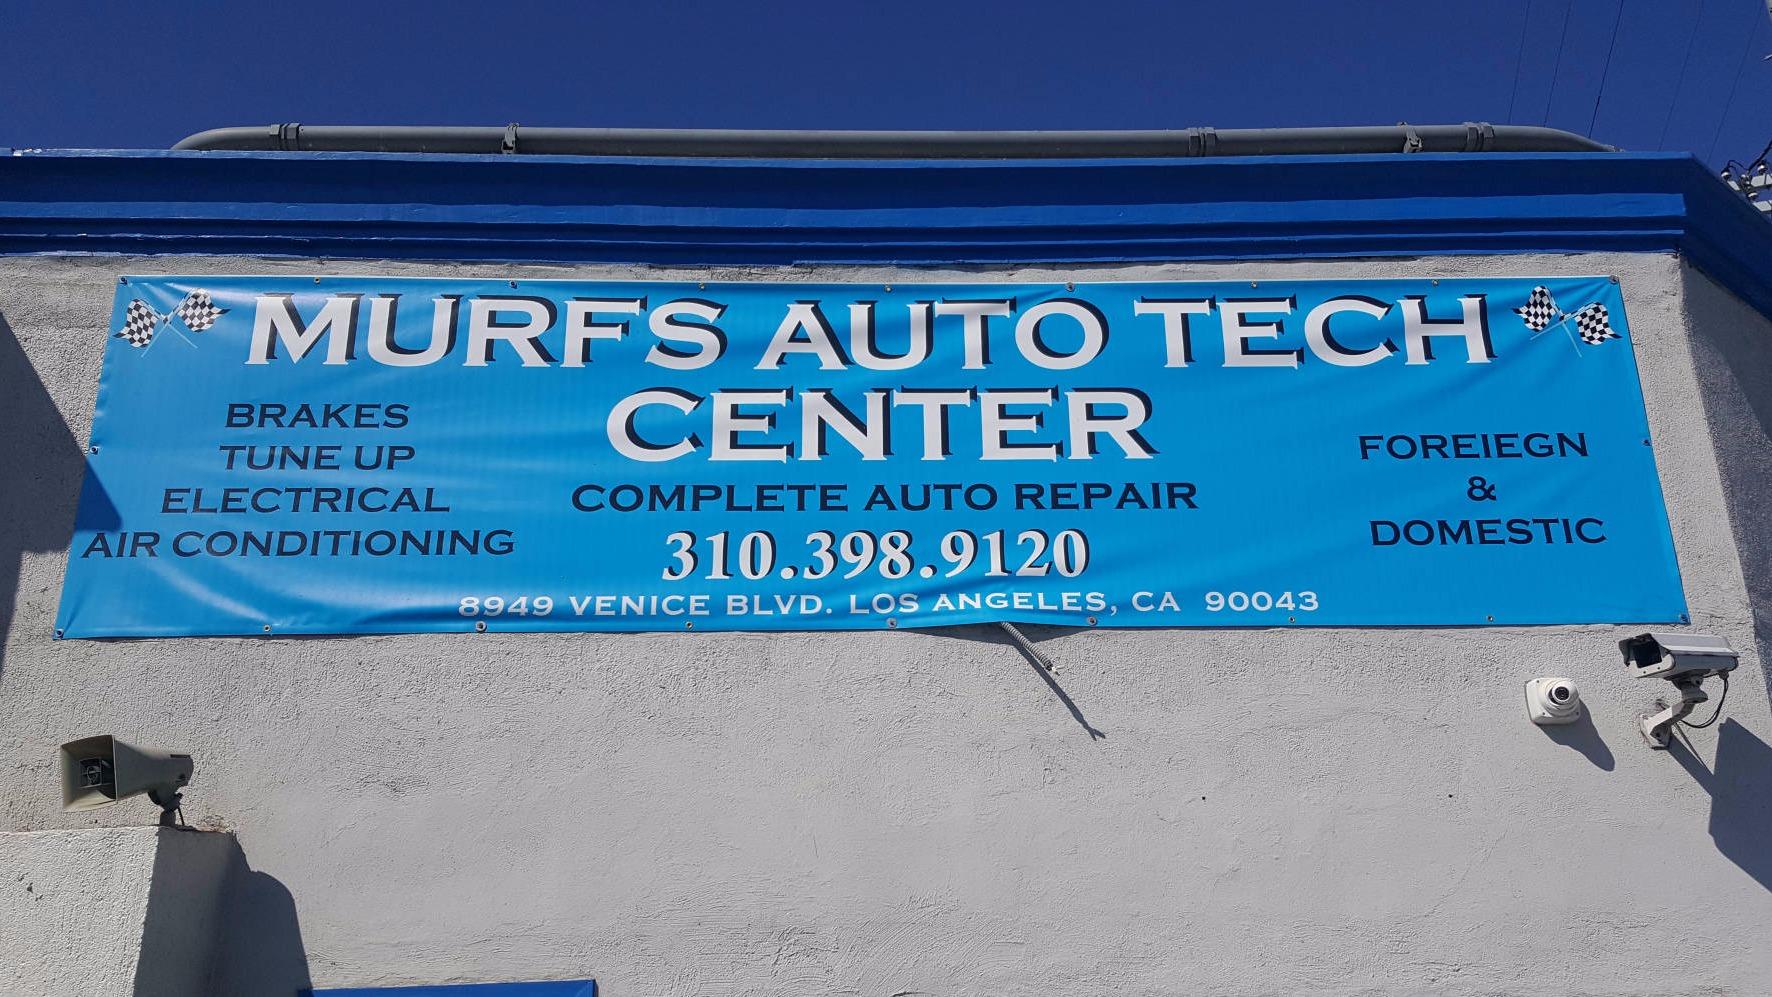 Murfs Auto Tech Center